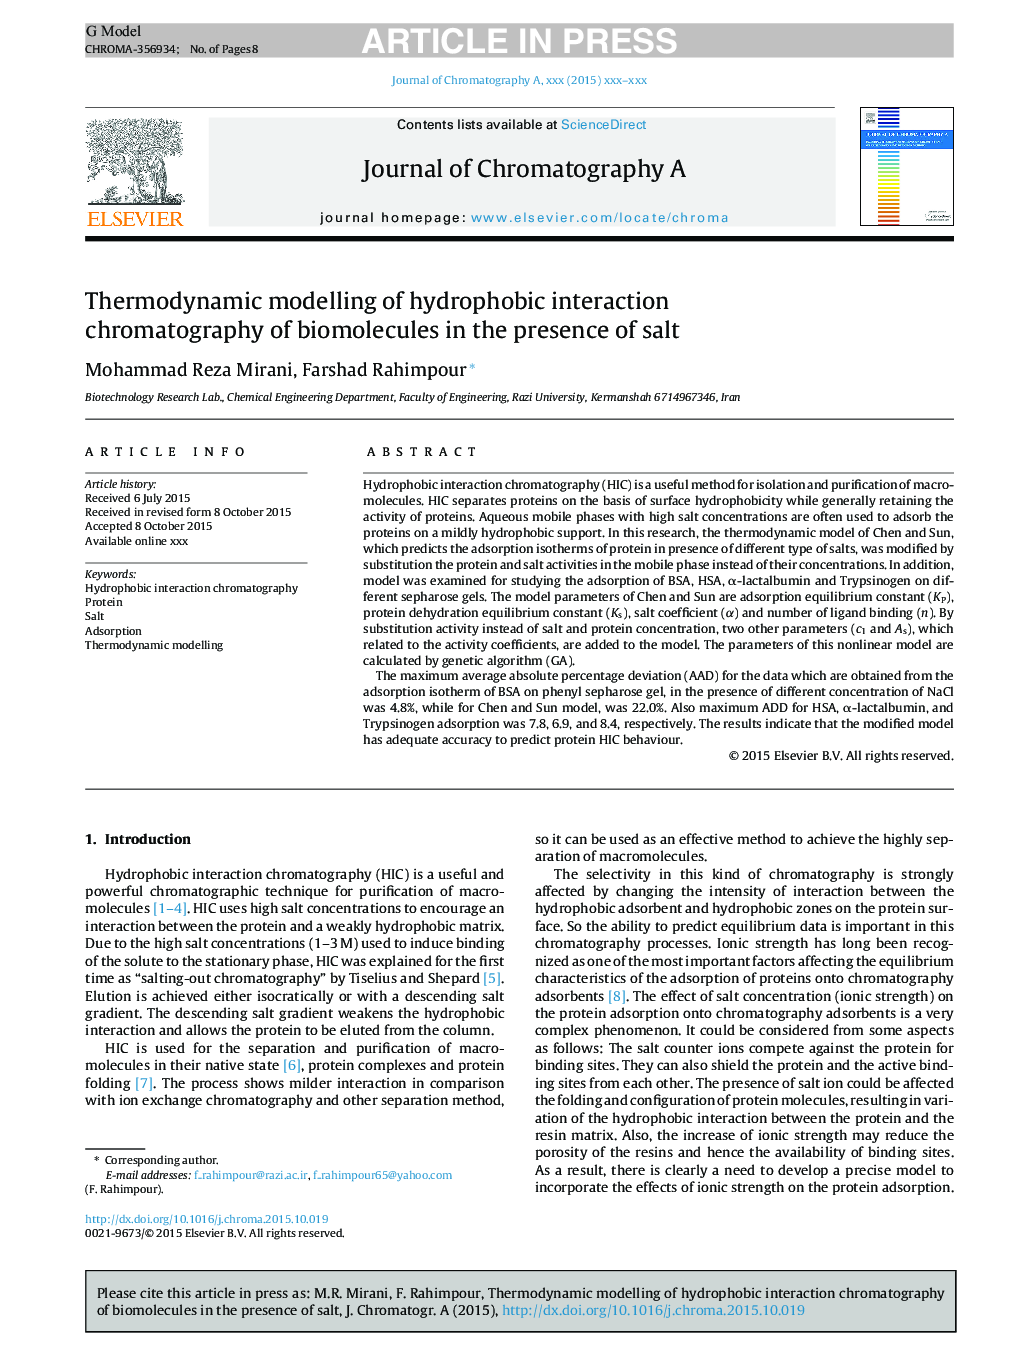 مدلسازی ترمودینامیکی کروماتوگرافی تعامل هیدروفوبی بیومولکول ها در حضور نمک 